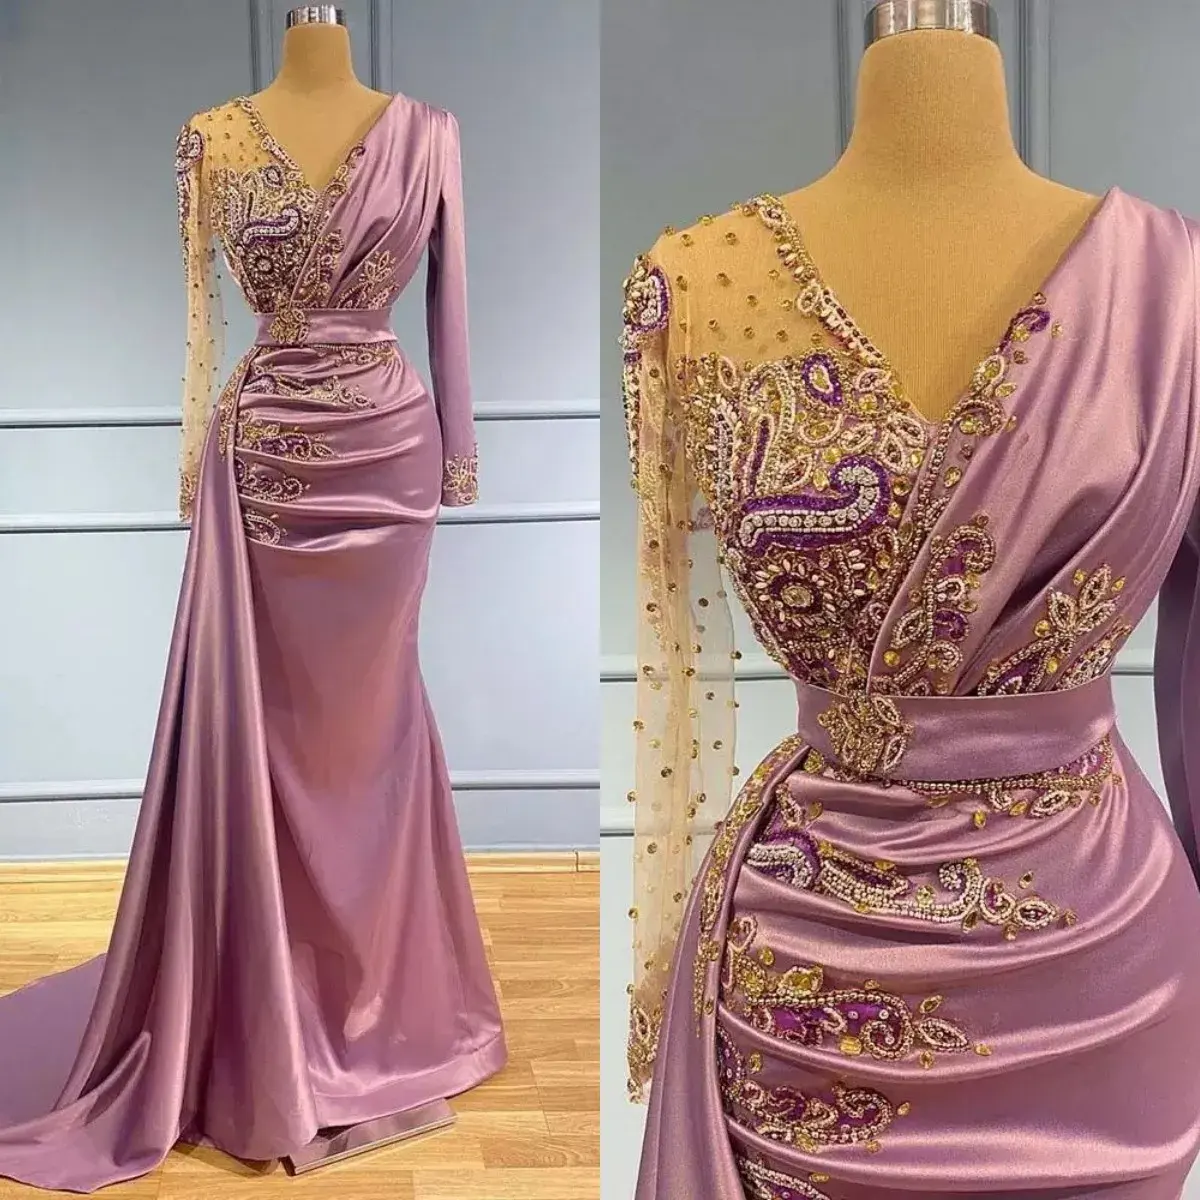 Gaun Prom putri duyung ungu muda gaun malam Formal lengan panjang manik-manik leher V gaun resepsi pesta MP674